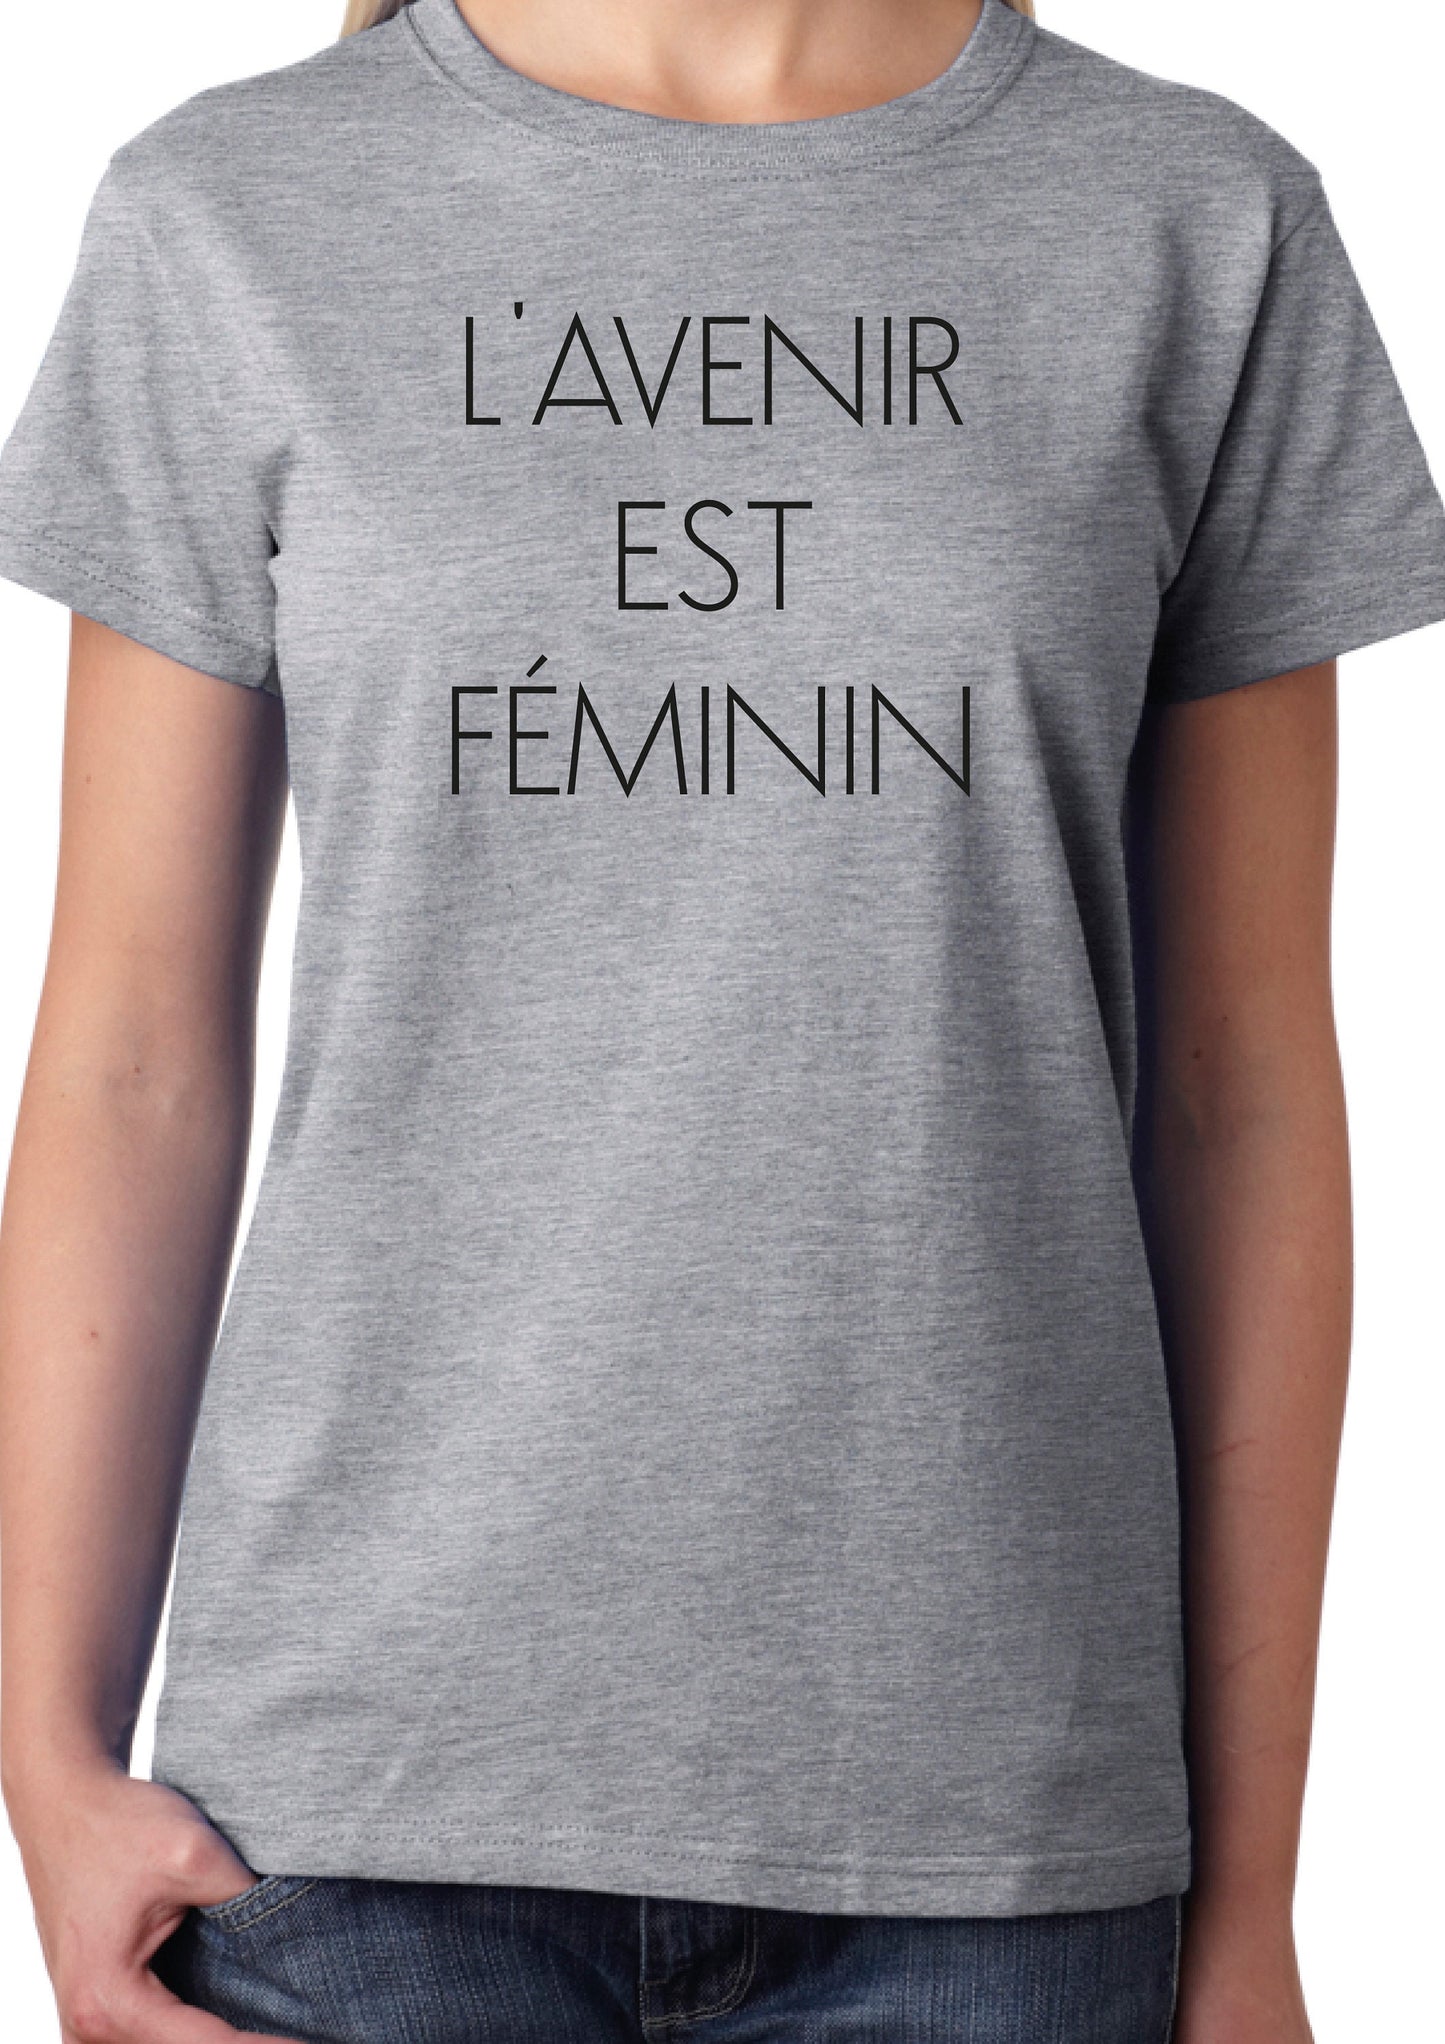 L'avenir est féminin T-Shirt, Funny Cool Ladies or Unisex